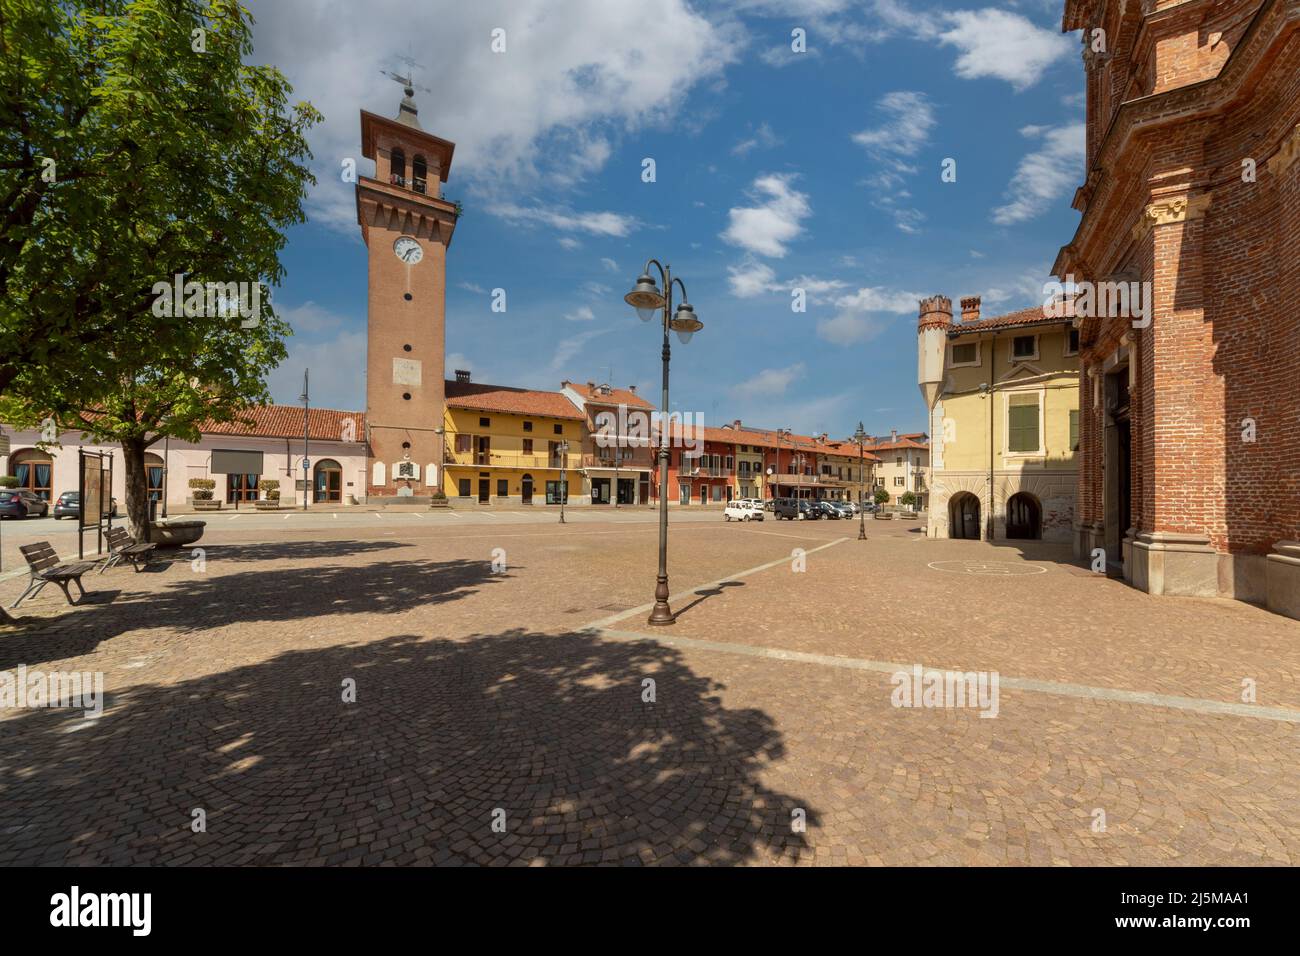 Villafalletto, Cuneo, Italia - 15 de abril de 2022: piazza Giuseppe Mazzini, la plaza central de Villafalletto con la torre cívica Foto de stock